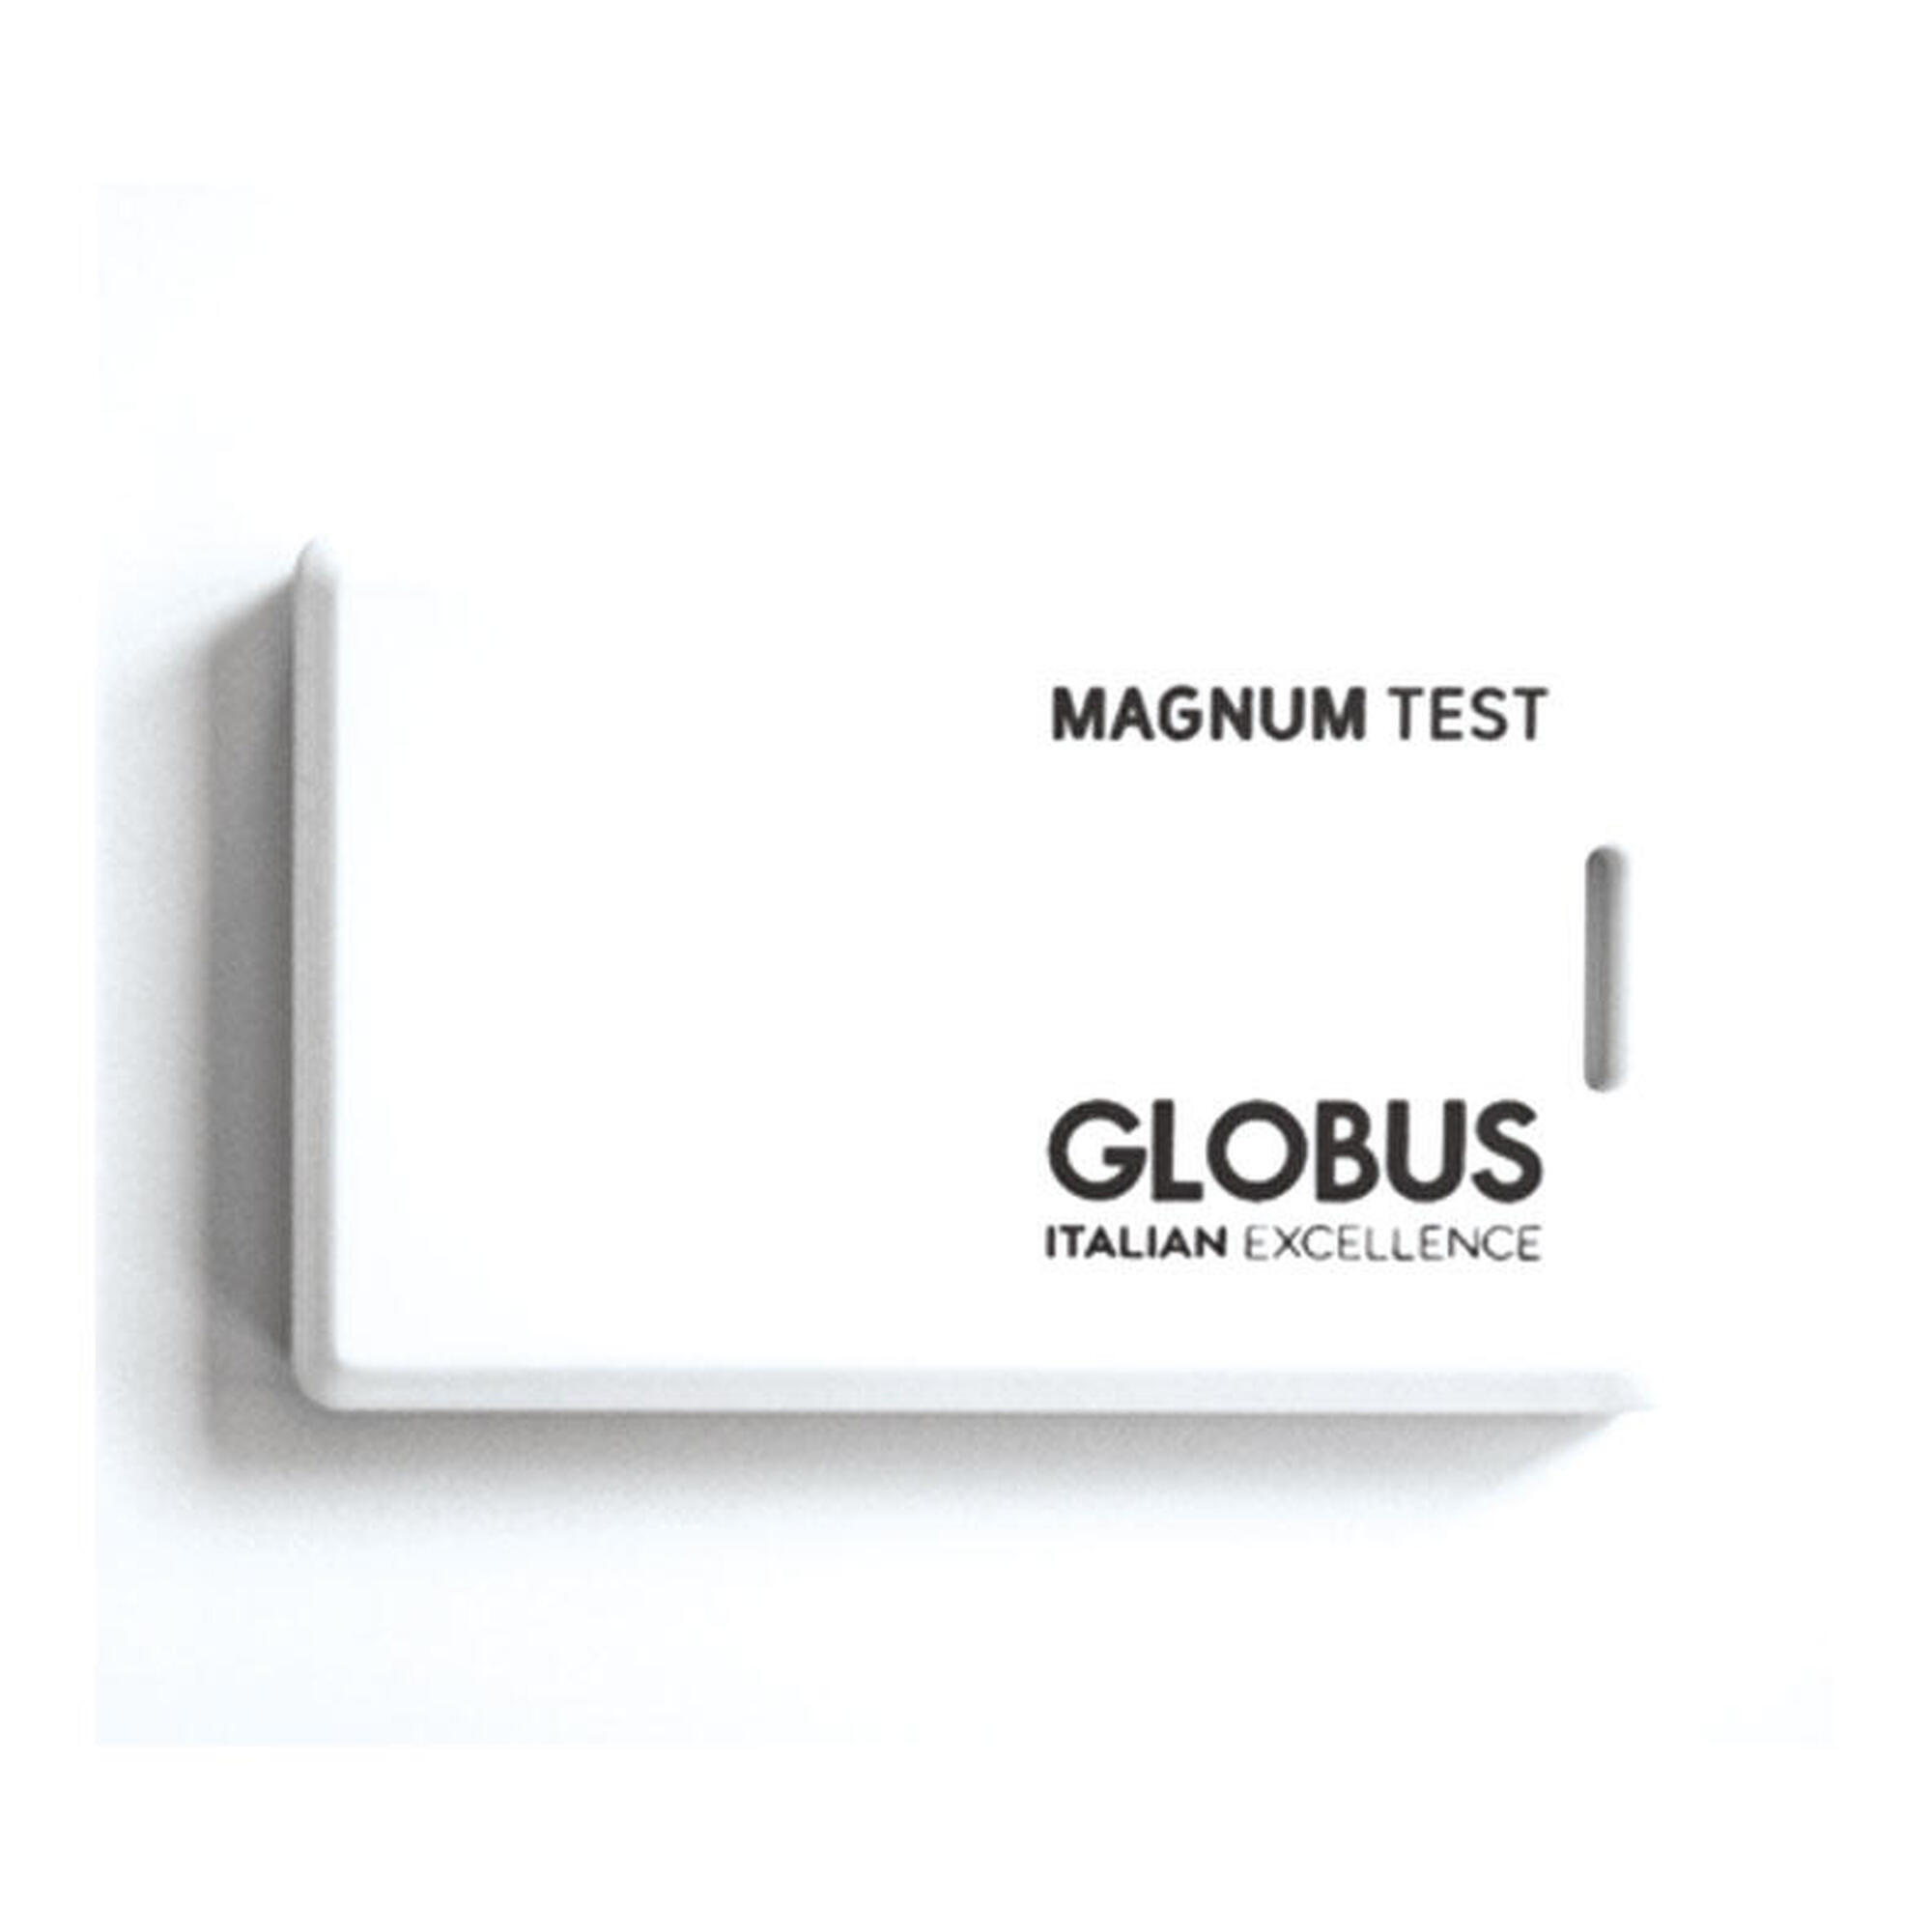 Magnetoterapia Globus Magnum 2500 Pocket Pro Solenoids